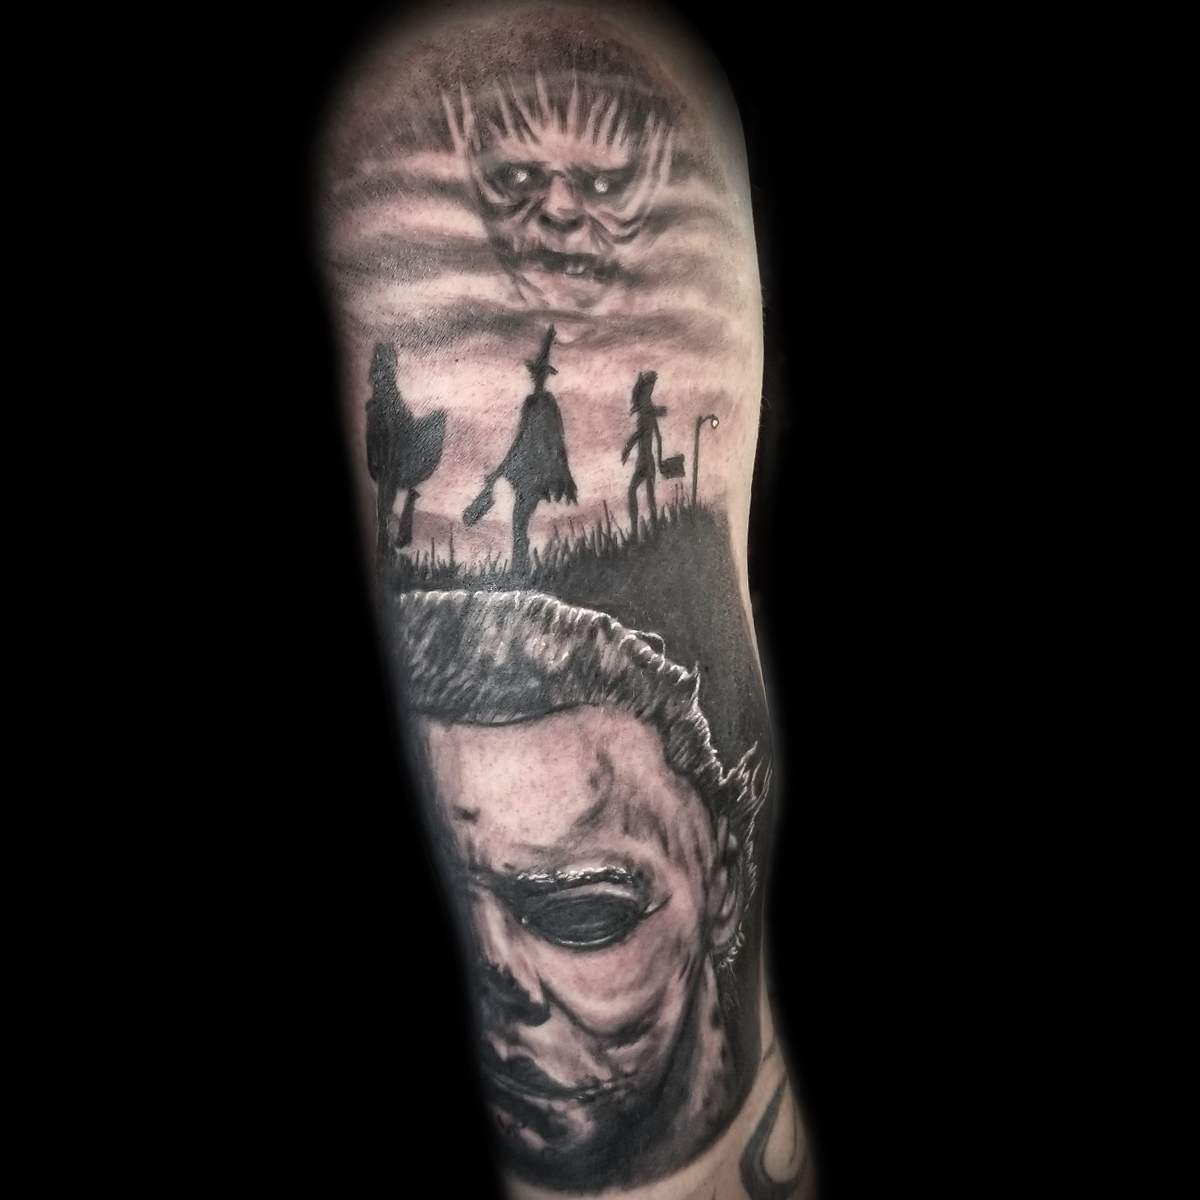 Horror tattoos - Best Tattoo Ideas Gallery